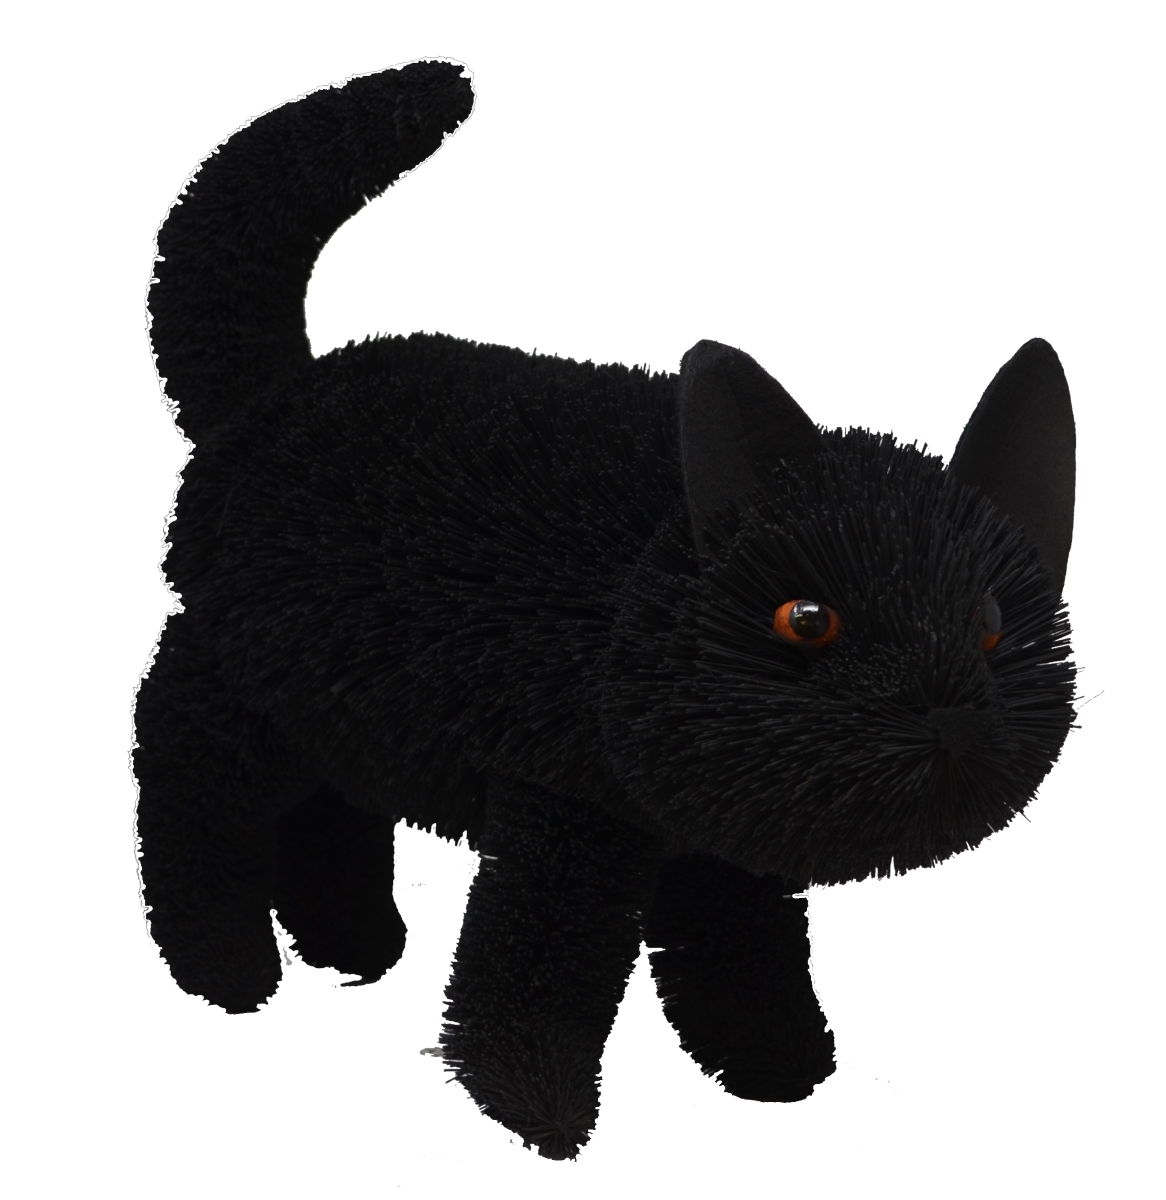 Brush01881 16 In. Black Cat Standing Figurines